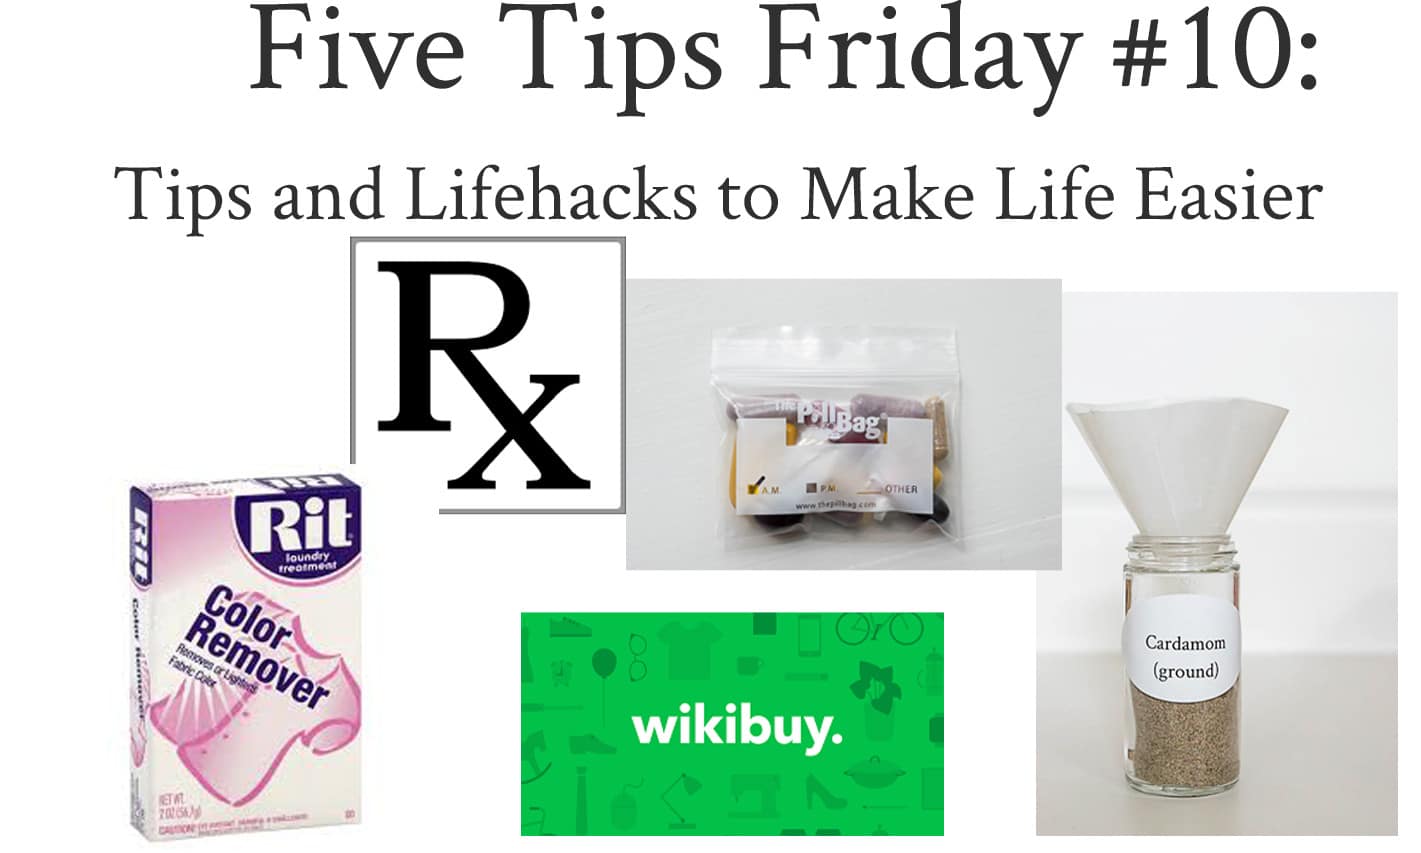 Tips and Lifehacks to Make Life Easier: Five Tips Friday #10